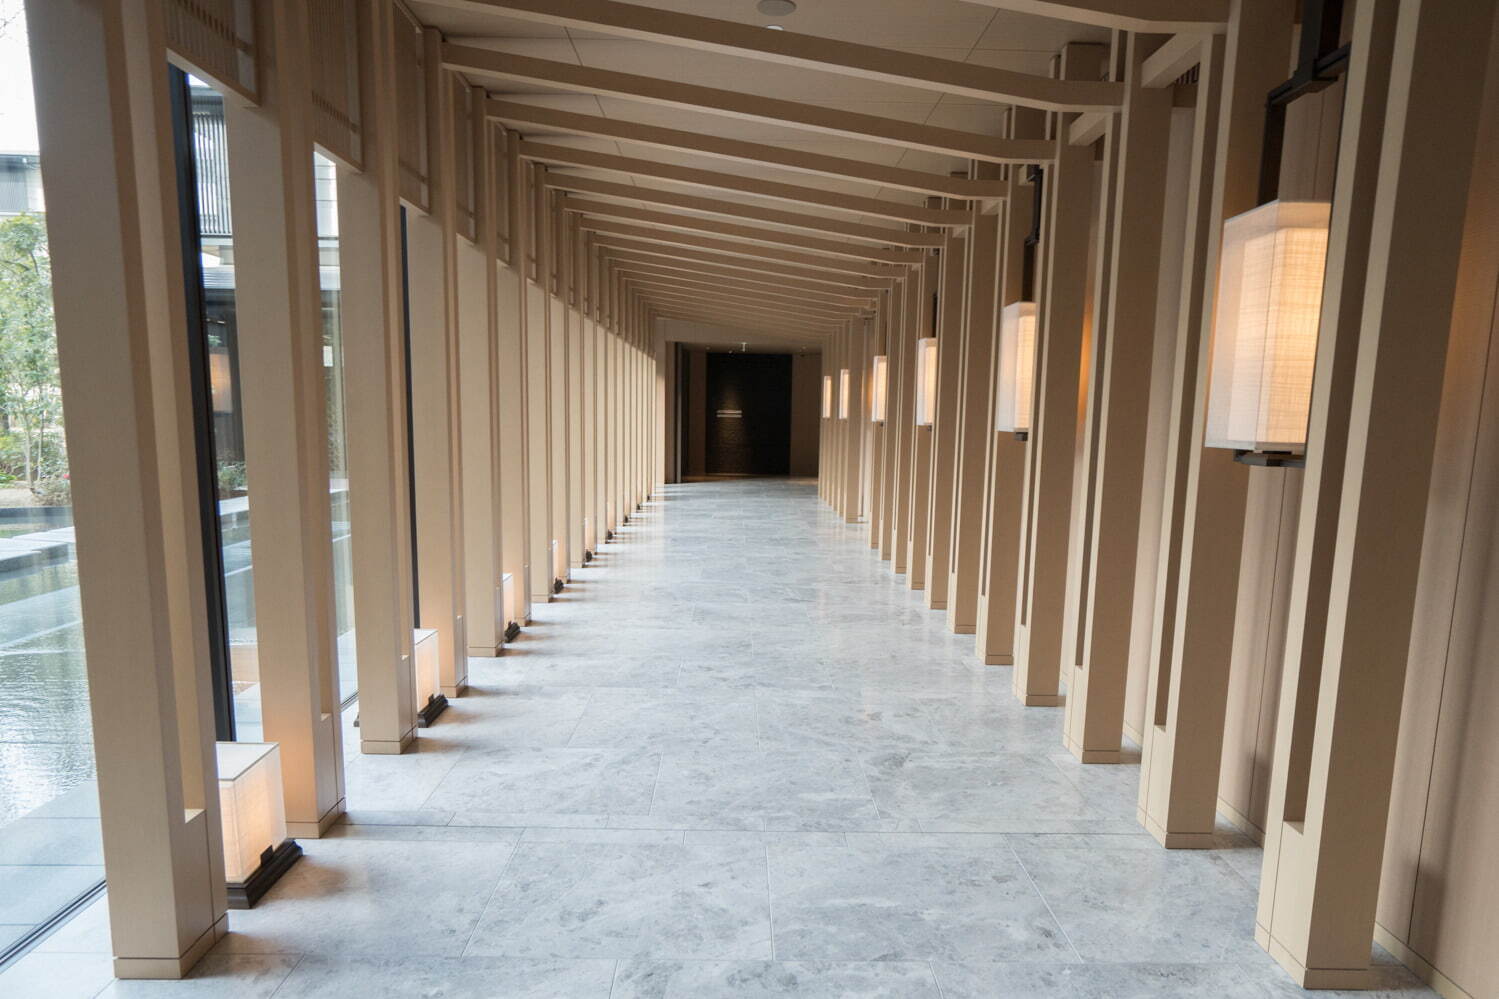 「フォルニ」は、地下1階と同様の伏見稲荷大社の千本鳥居をモチーフにした回廊を抜けた先にある。